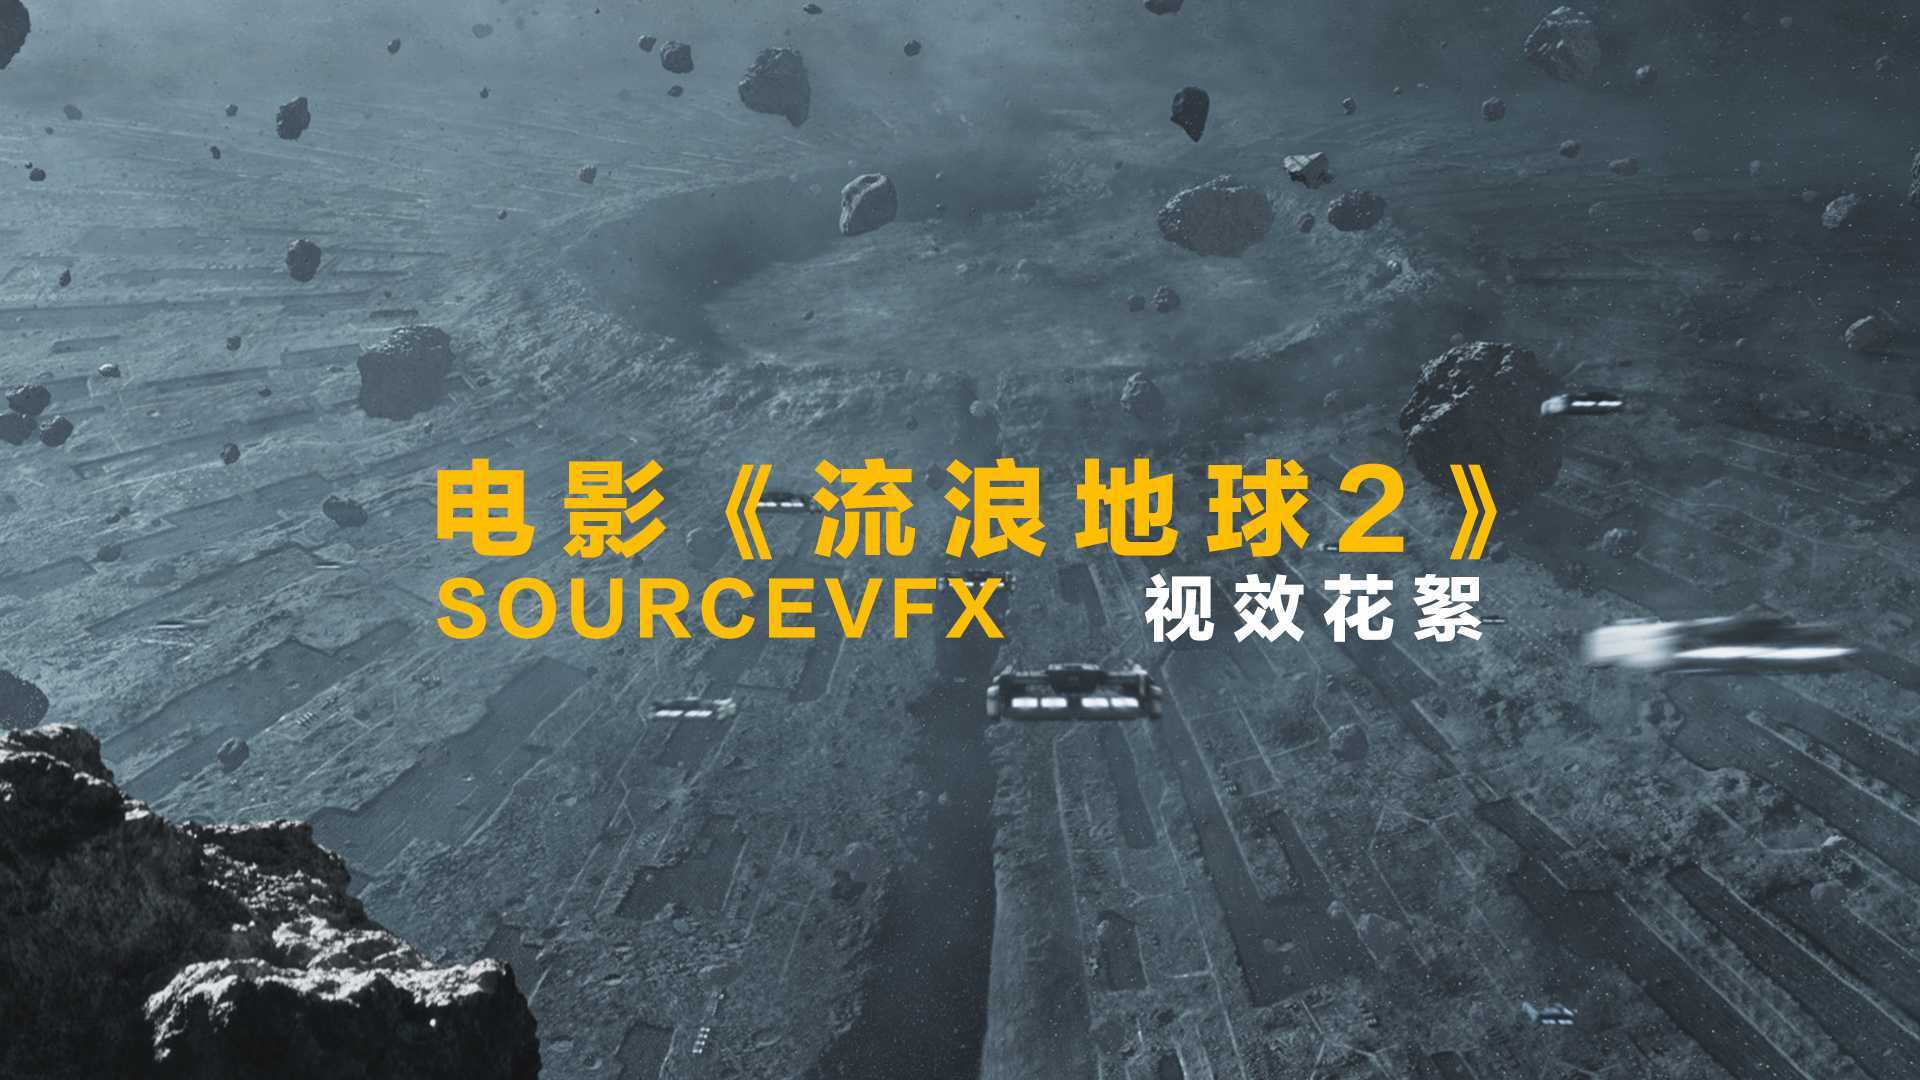 SOURCEVFX_电影《流浪地球2》_视效花絮_猿人影视